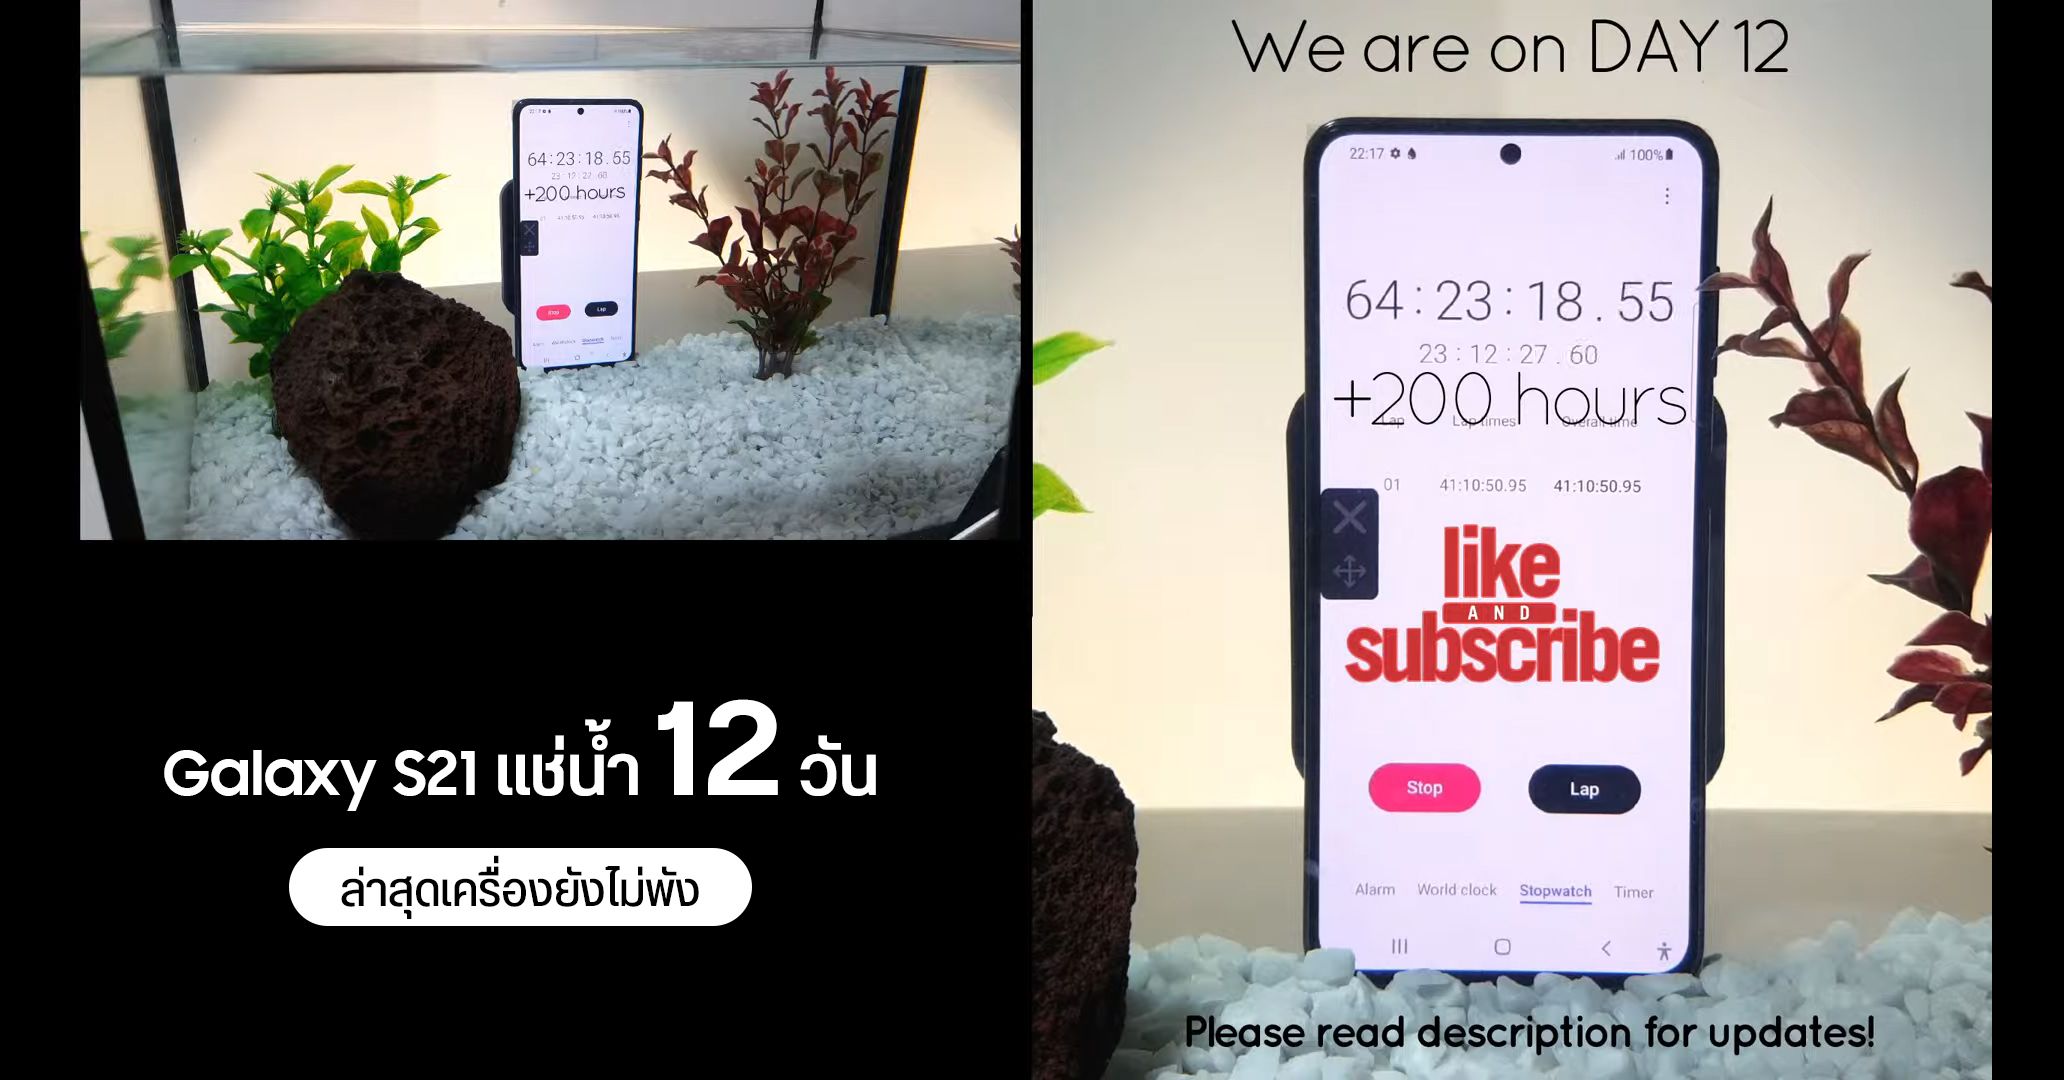 จับ Samsung Galaxy S21 แช่น้ำในตู้ปลา ไลฟ์ผ่านยูทูป ผ่านมา 12 วัน ยังใช้งานได้อยู่